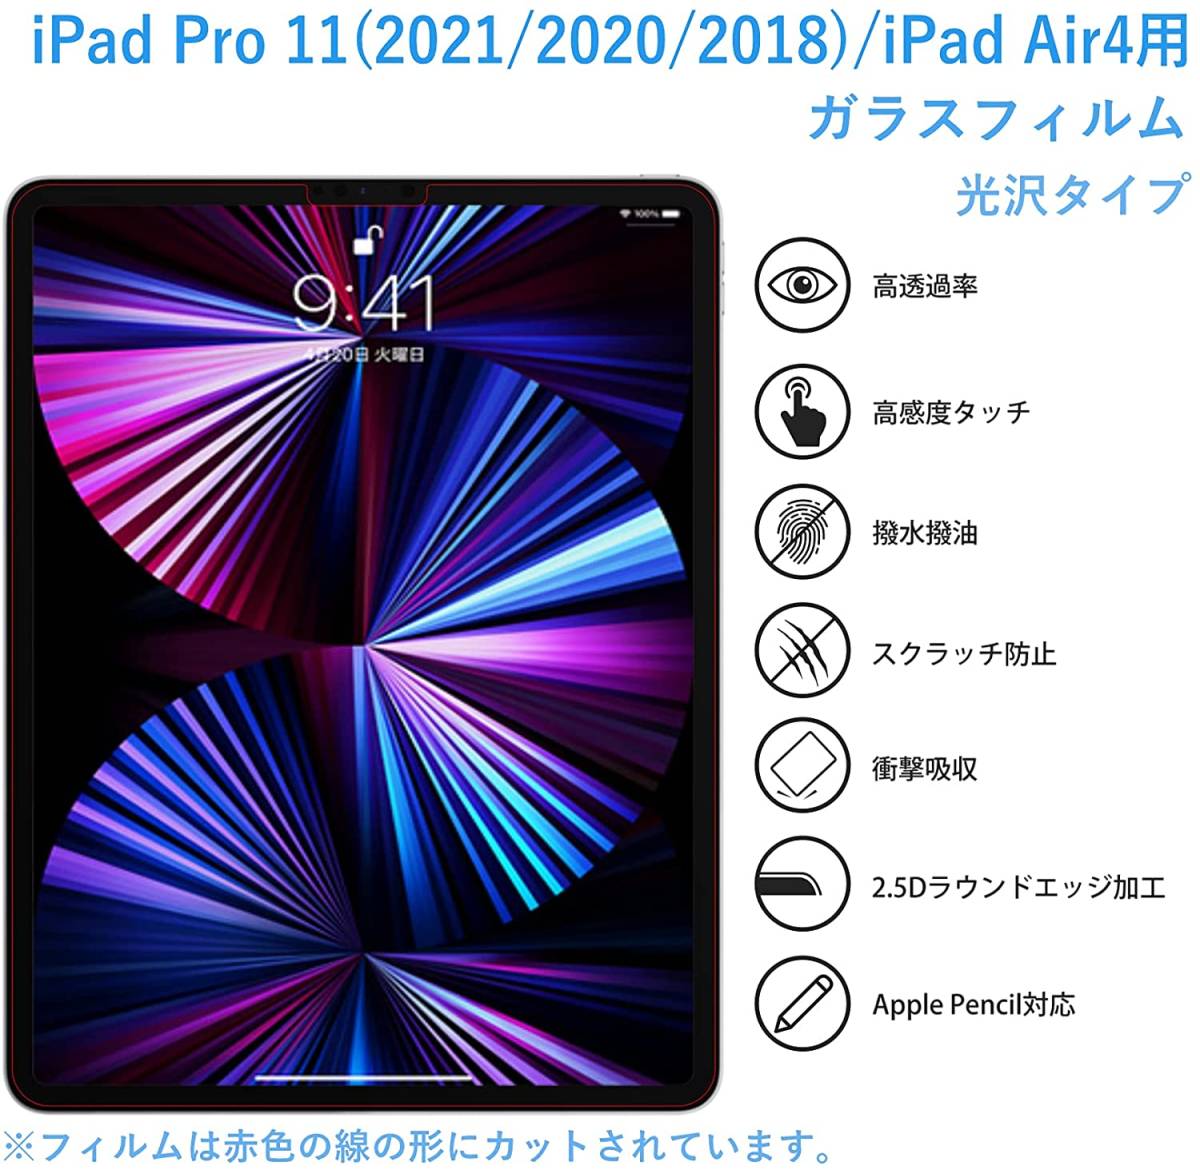 ガイド枠付き 高透過 高品質 ガラスフィルム iPad Pro 11 (2021 / 2020 / 2018) / iPad Air 4 強化 保護 9H硬度硝子 NTB19J42_画像3